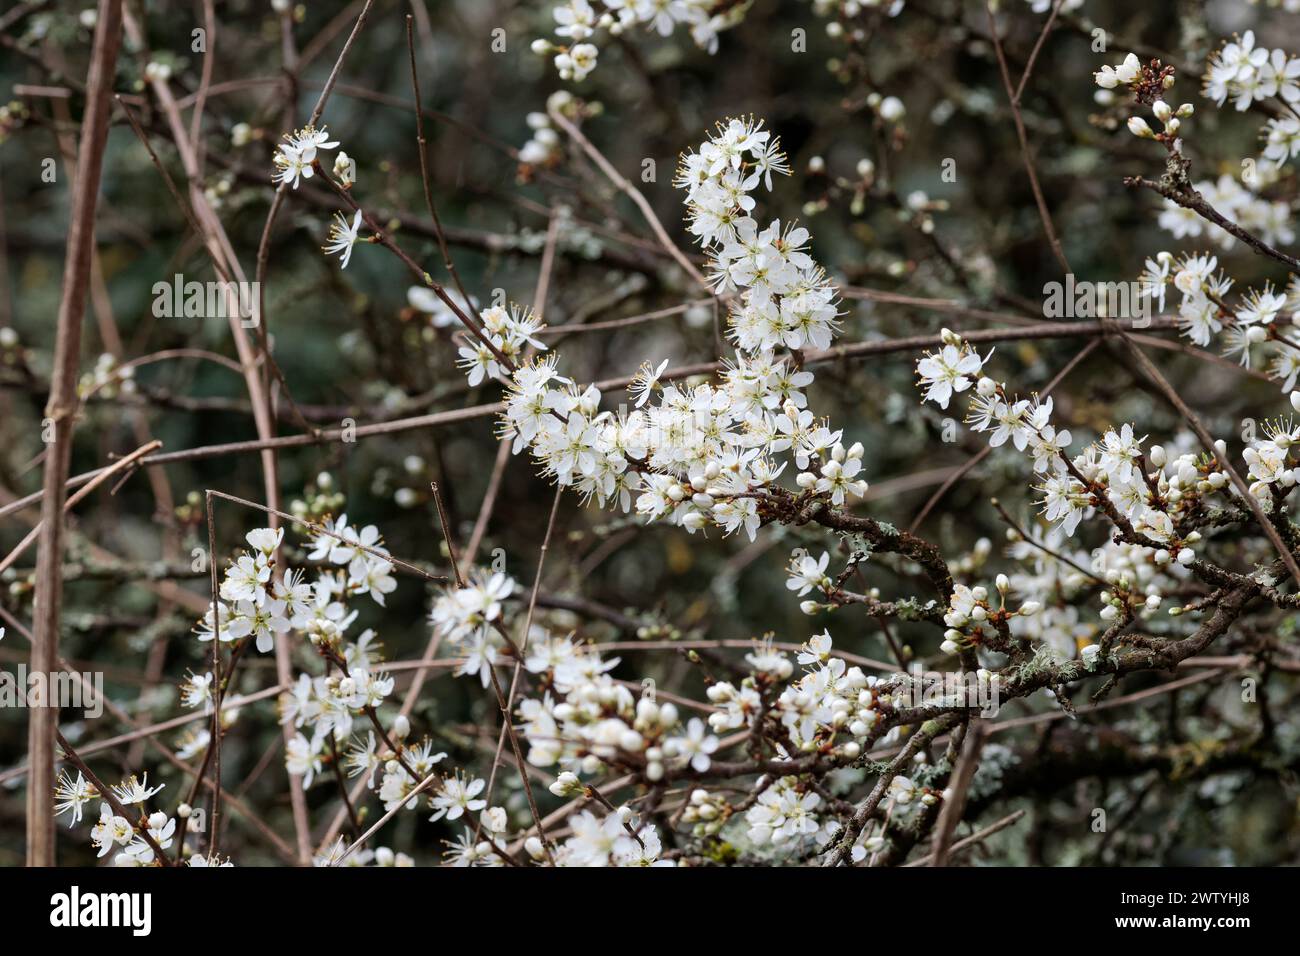 Schwarzdorn Prunus spinosa, Dornhecke Sträucher Frühlingssaison UK mehrere weiße fünf Blütenblätter erscheinen vor den Blättern mit langen Stamen Stockfoto